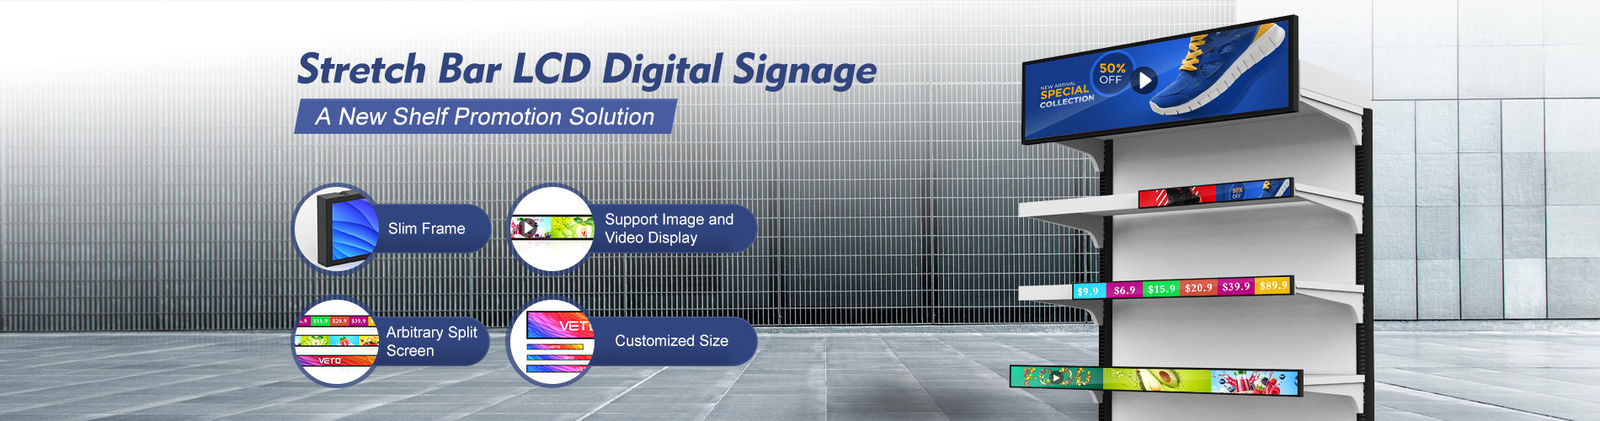 kualitas lantai berdiri digital signage pabrik